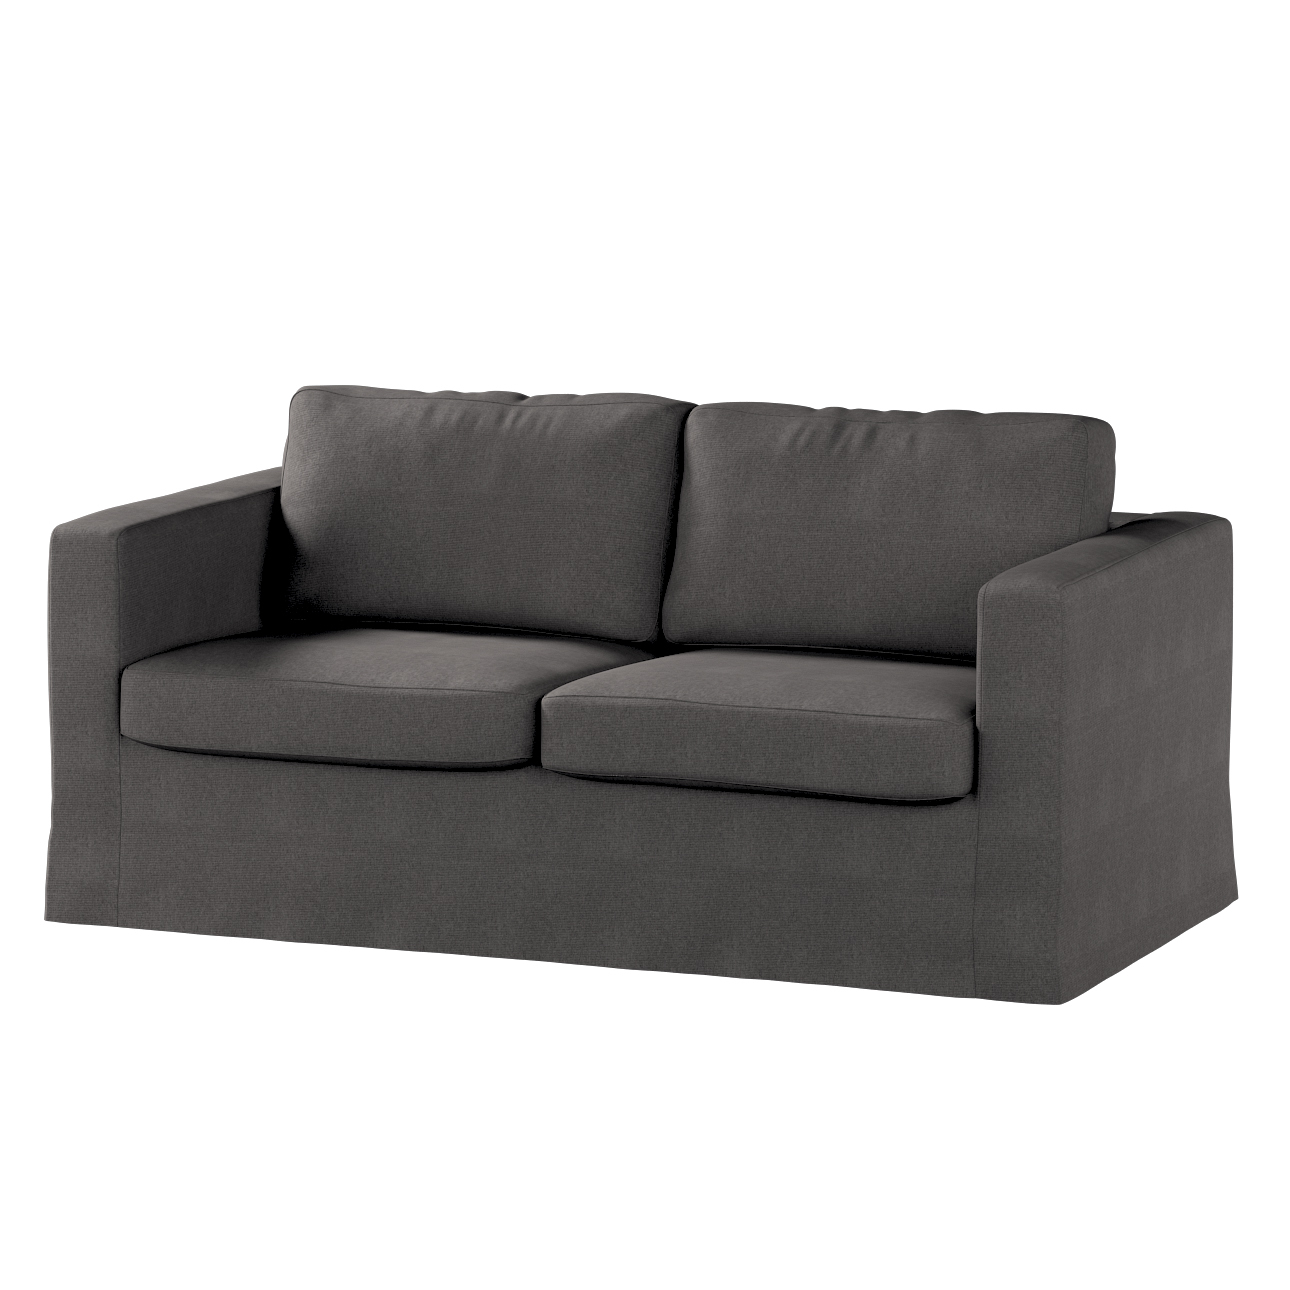 Bezug für Karlstad 2-Sitzer Sofa nicht ausklappbar, lang, dunkelgrau, Sofah günstig online kaufen